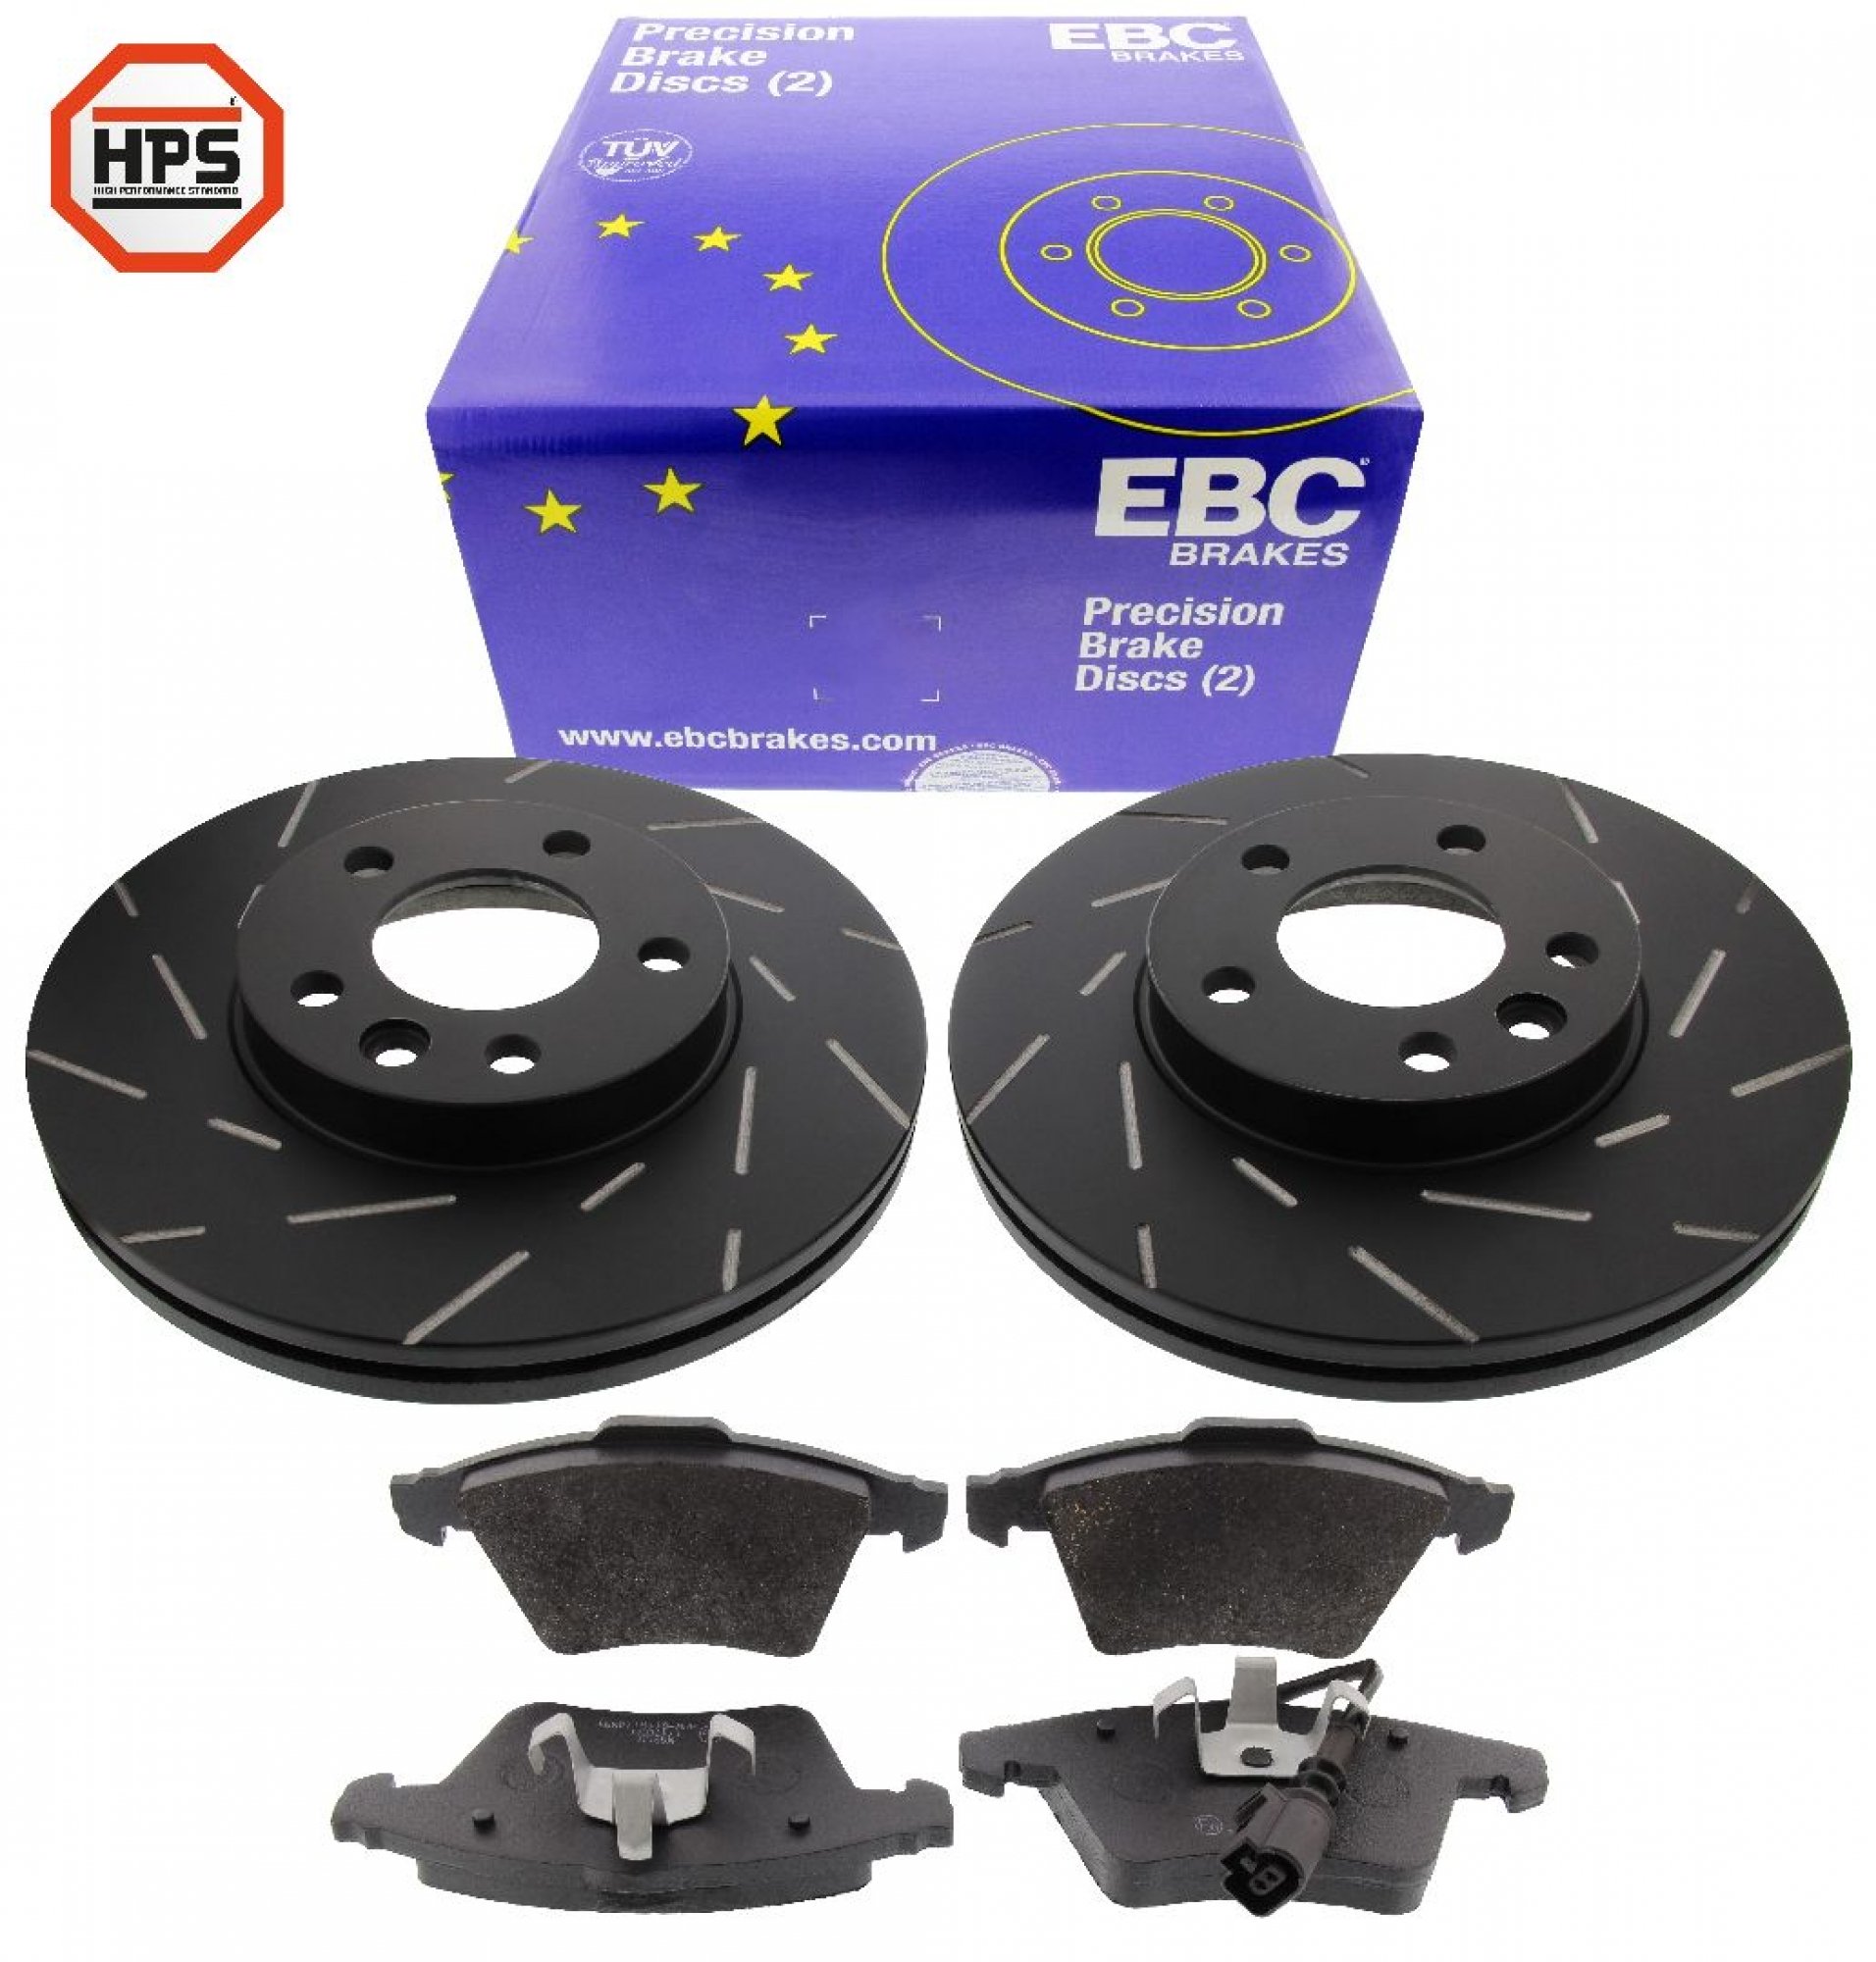 EBC-Bremsensatz, Black Dash Disc + HPS-Carbon-Bremsbelägen von MAPCO, Achssatz, VA